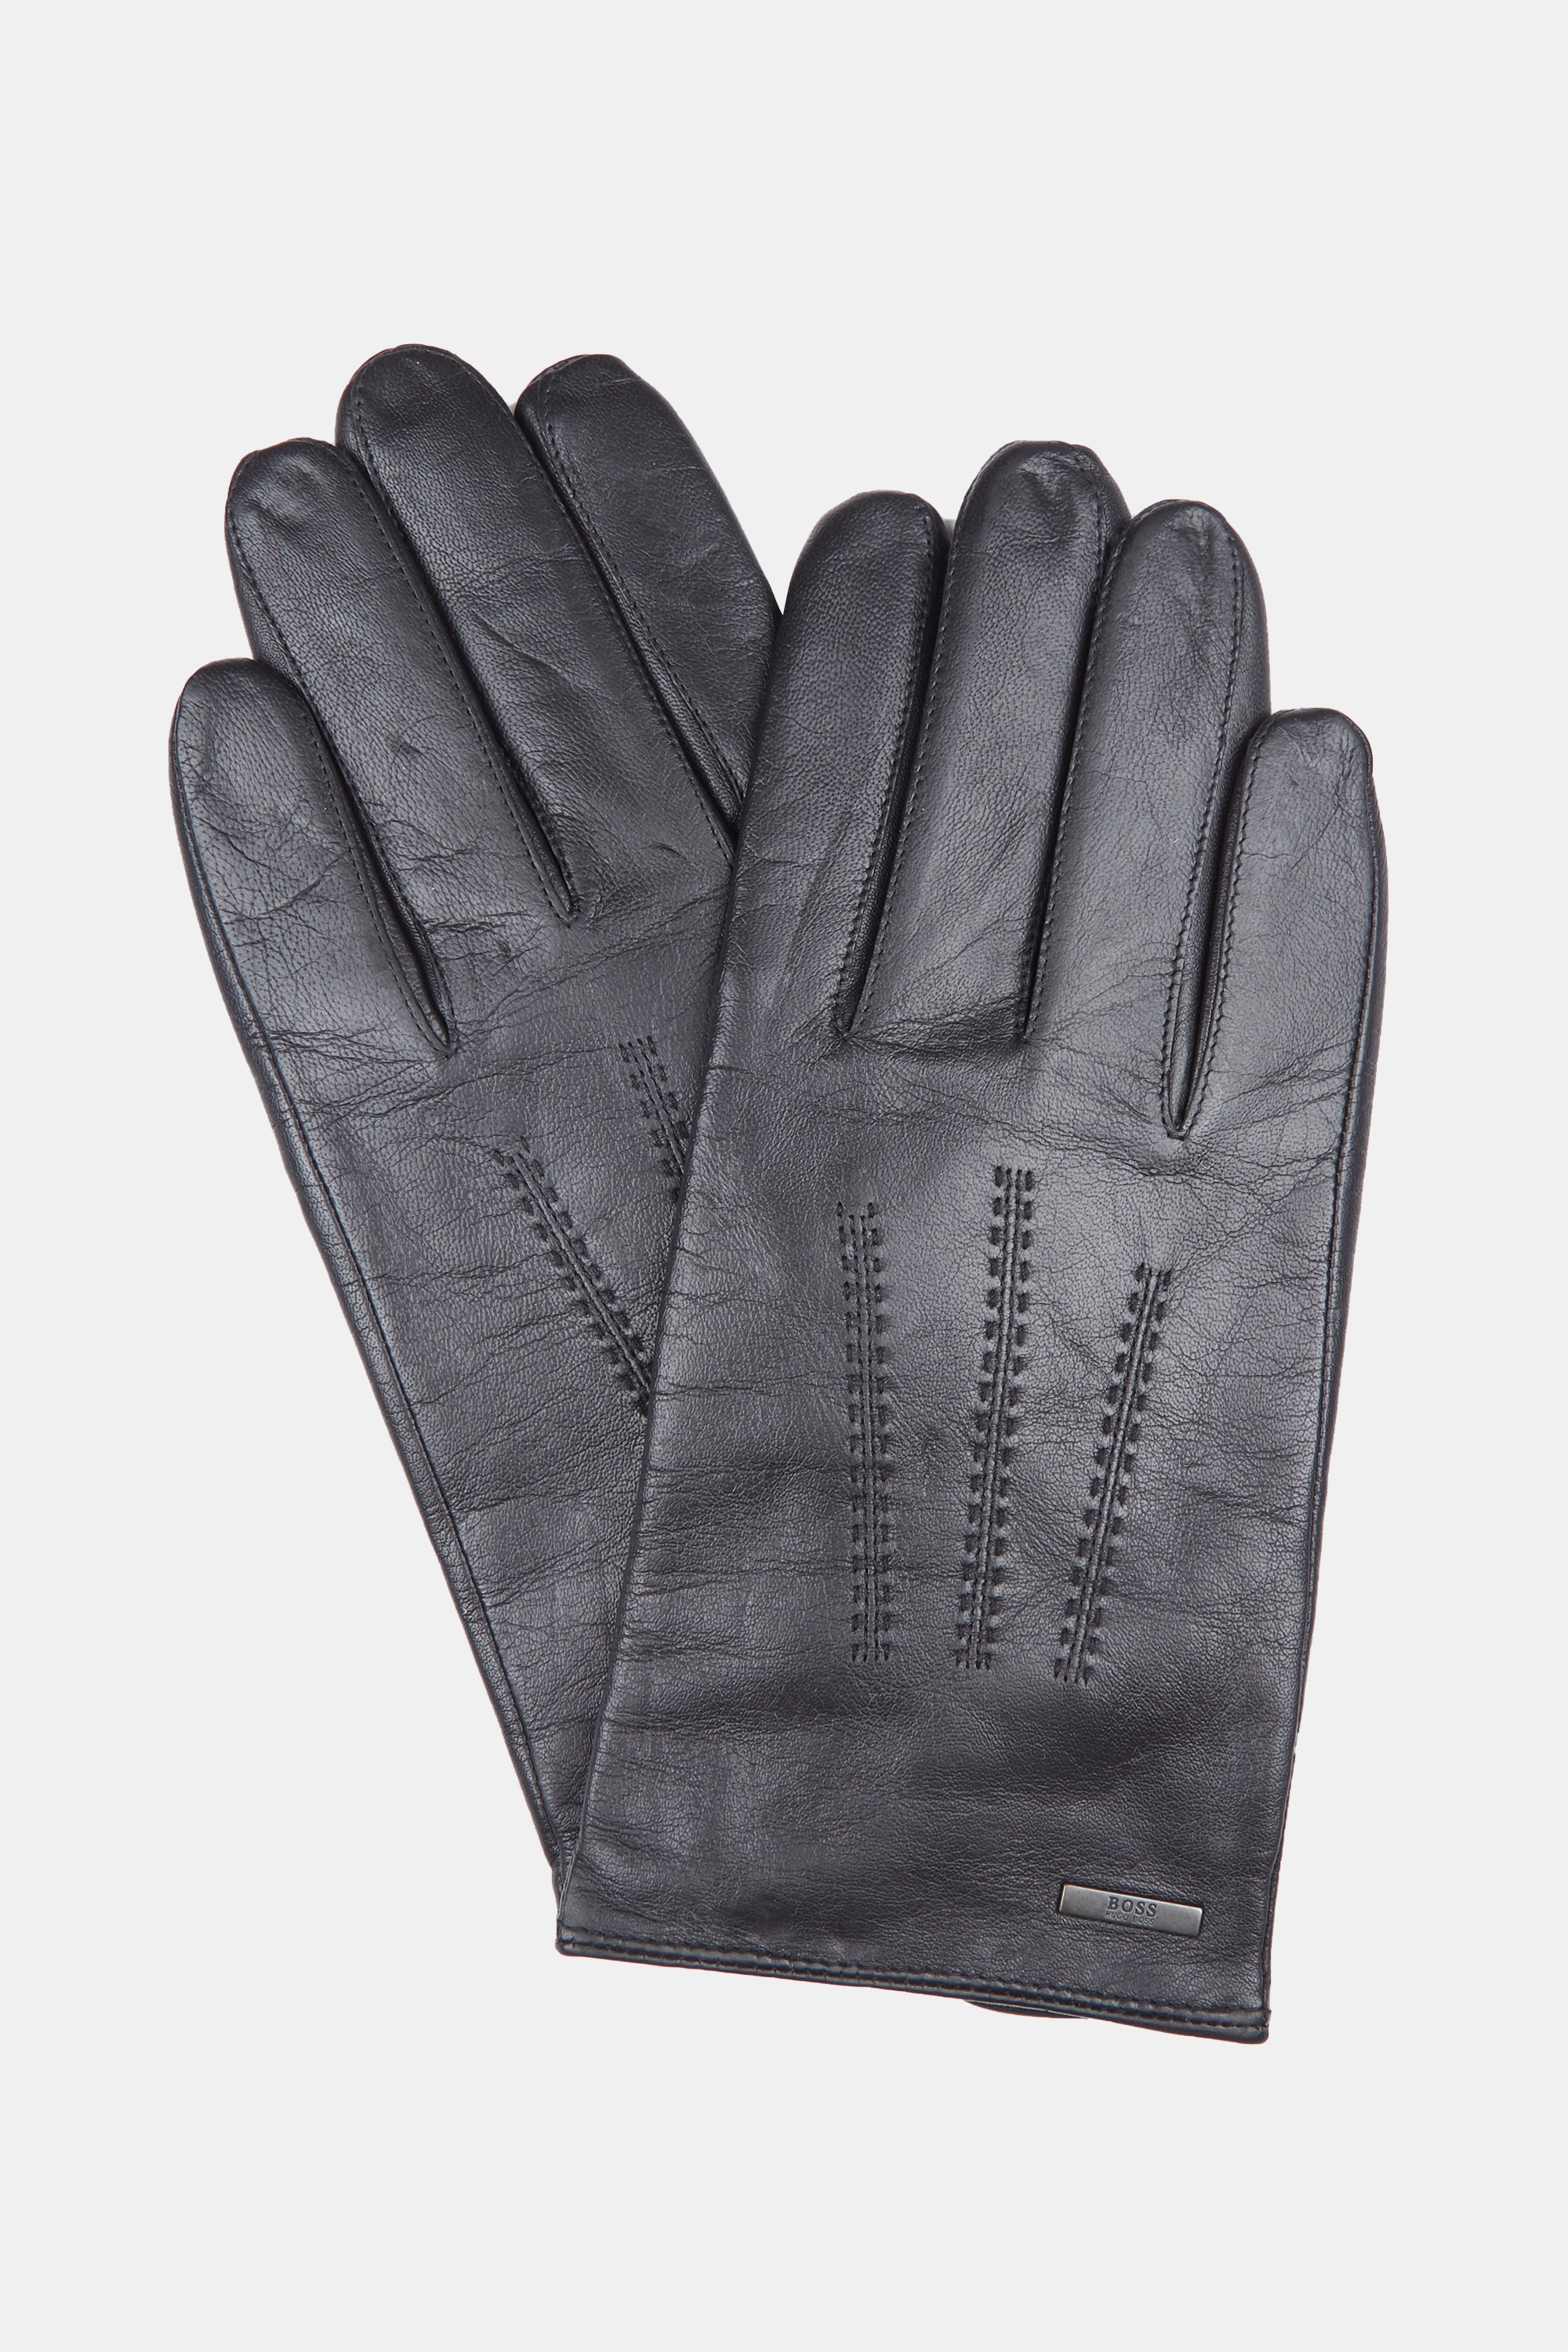 hugo boss leather gloves